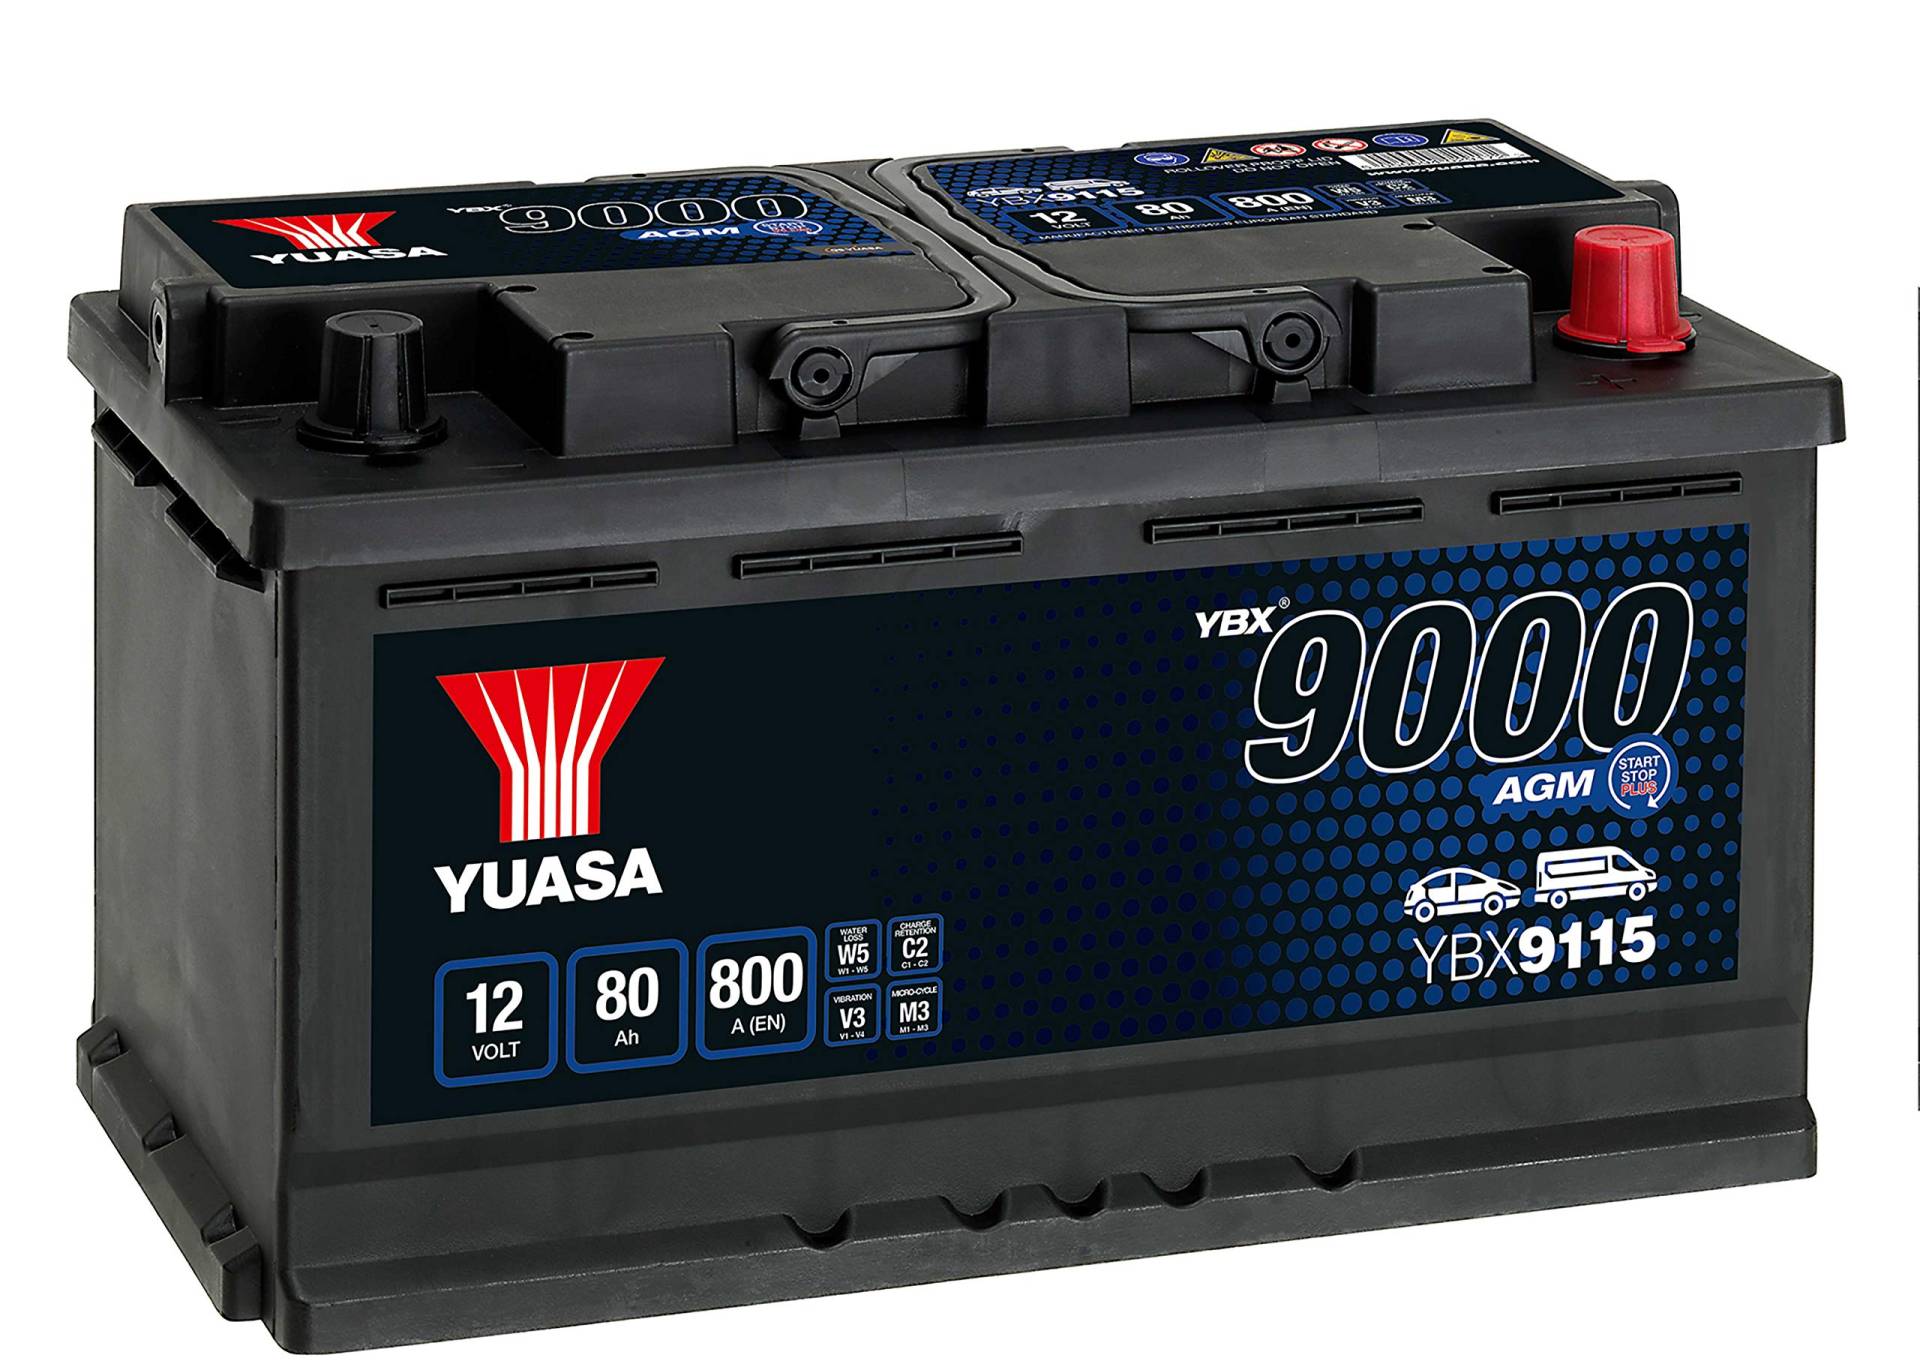 YUASA ybx9115 AGM Akku Start Stop Plus, 12 V/80 Ah/800 A von Yuasa